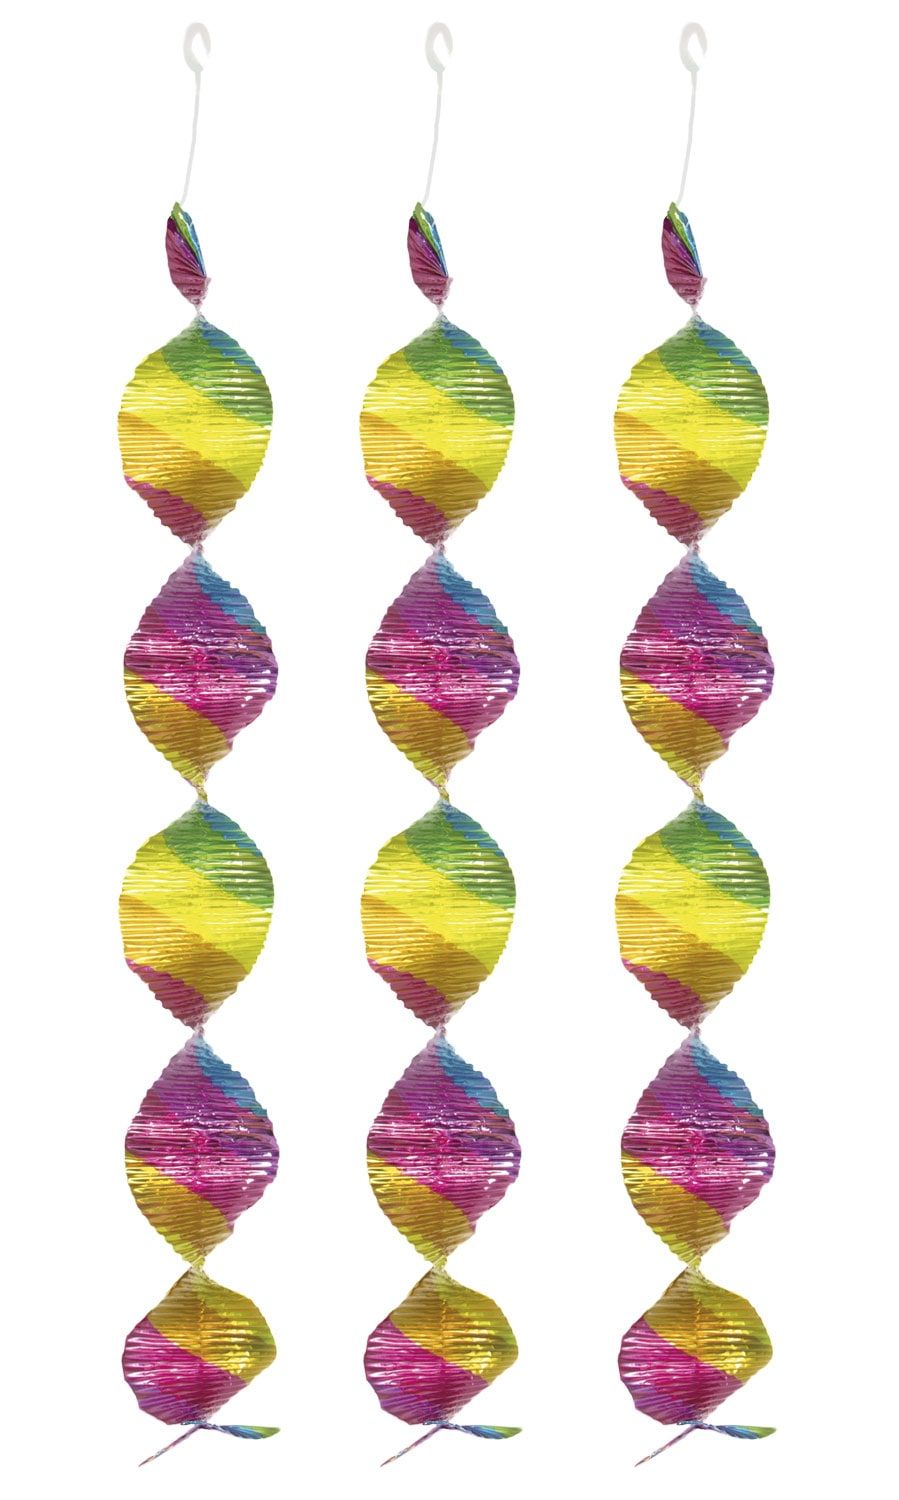 Hangdecoratie spiraalvorm regenboog